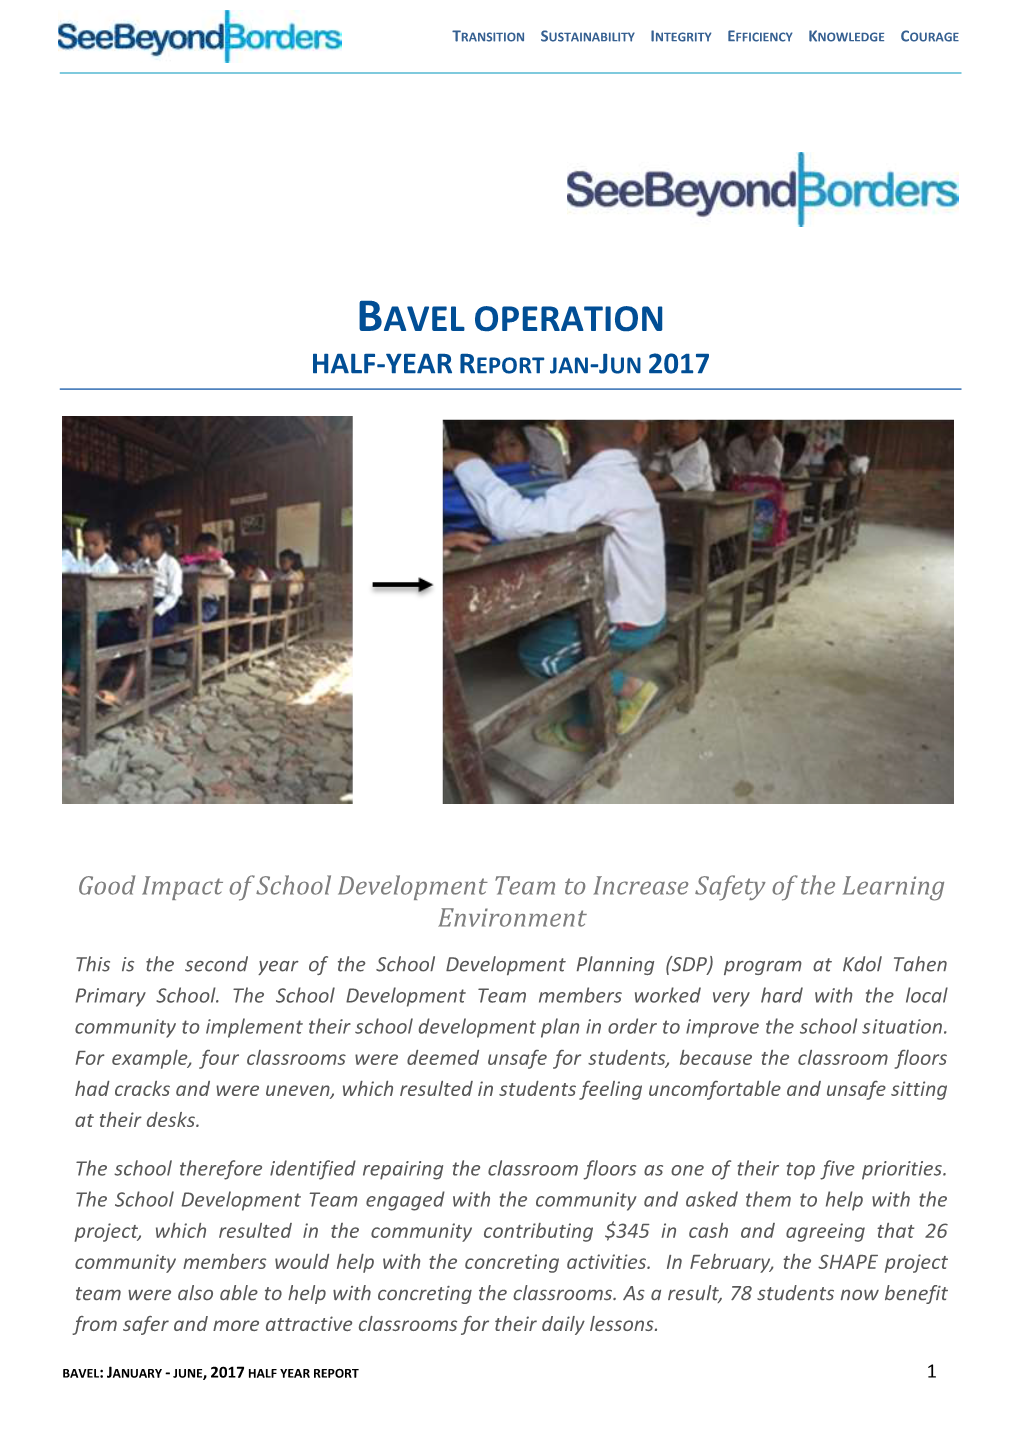 Bavel Operation Half-Year Report Jan-Jun 2017